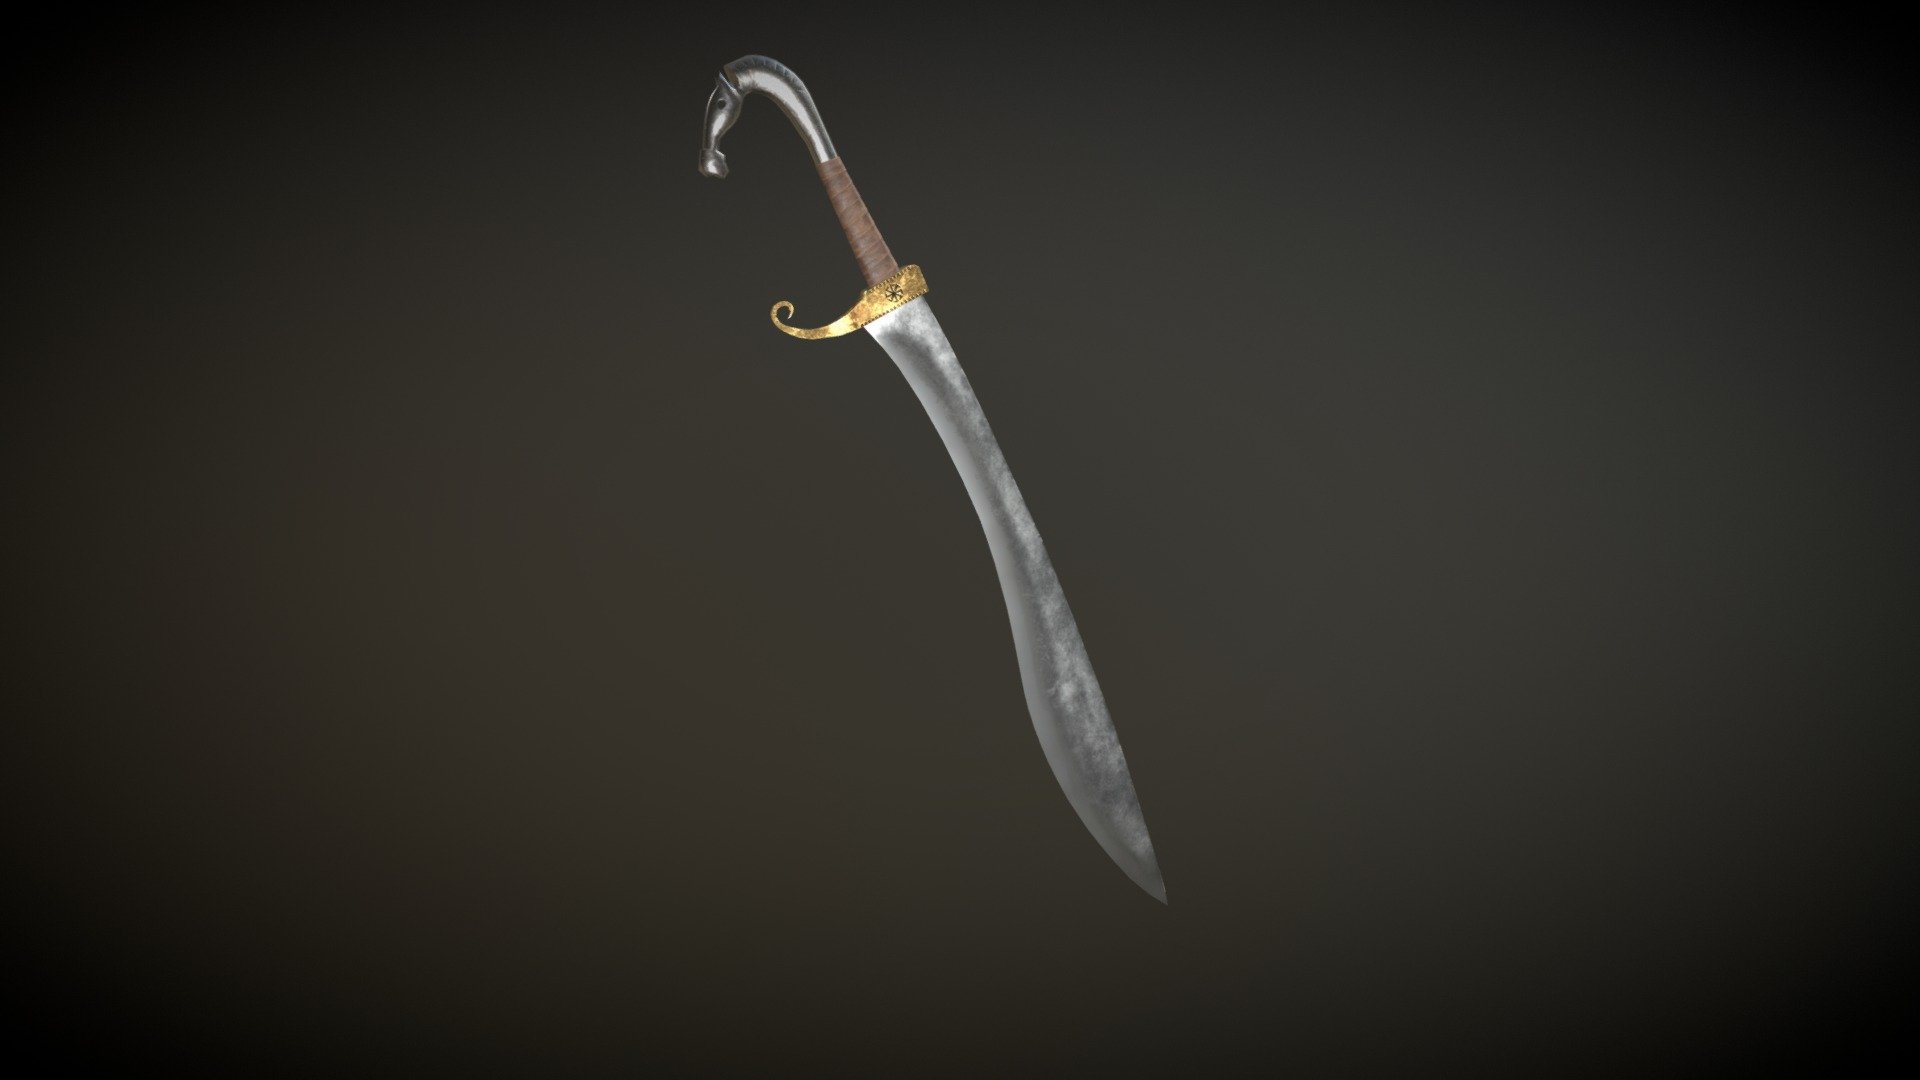 Sword 1